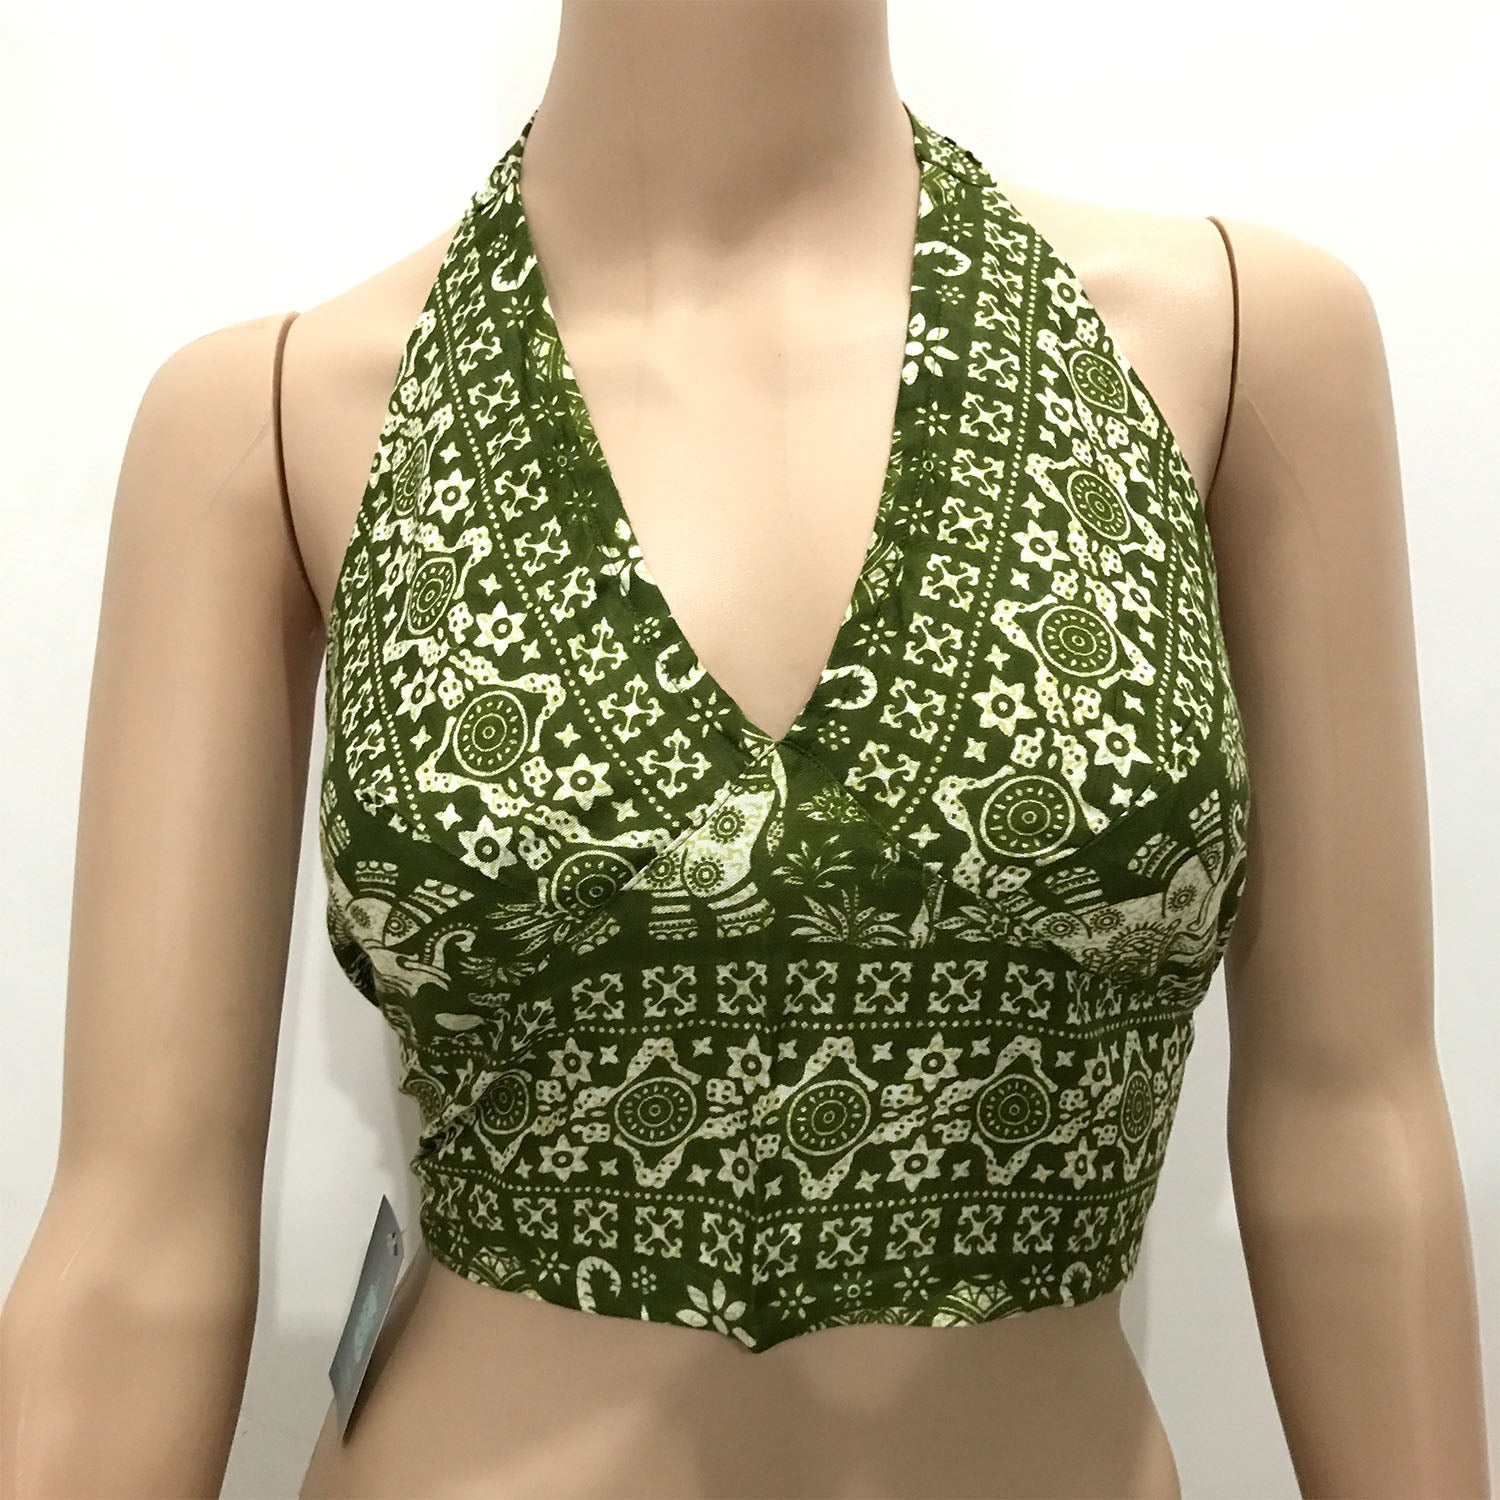 Can women wear crop tops in India? - Quora